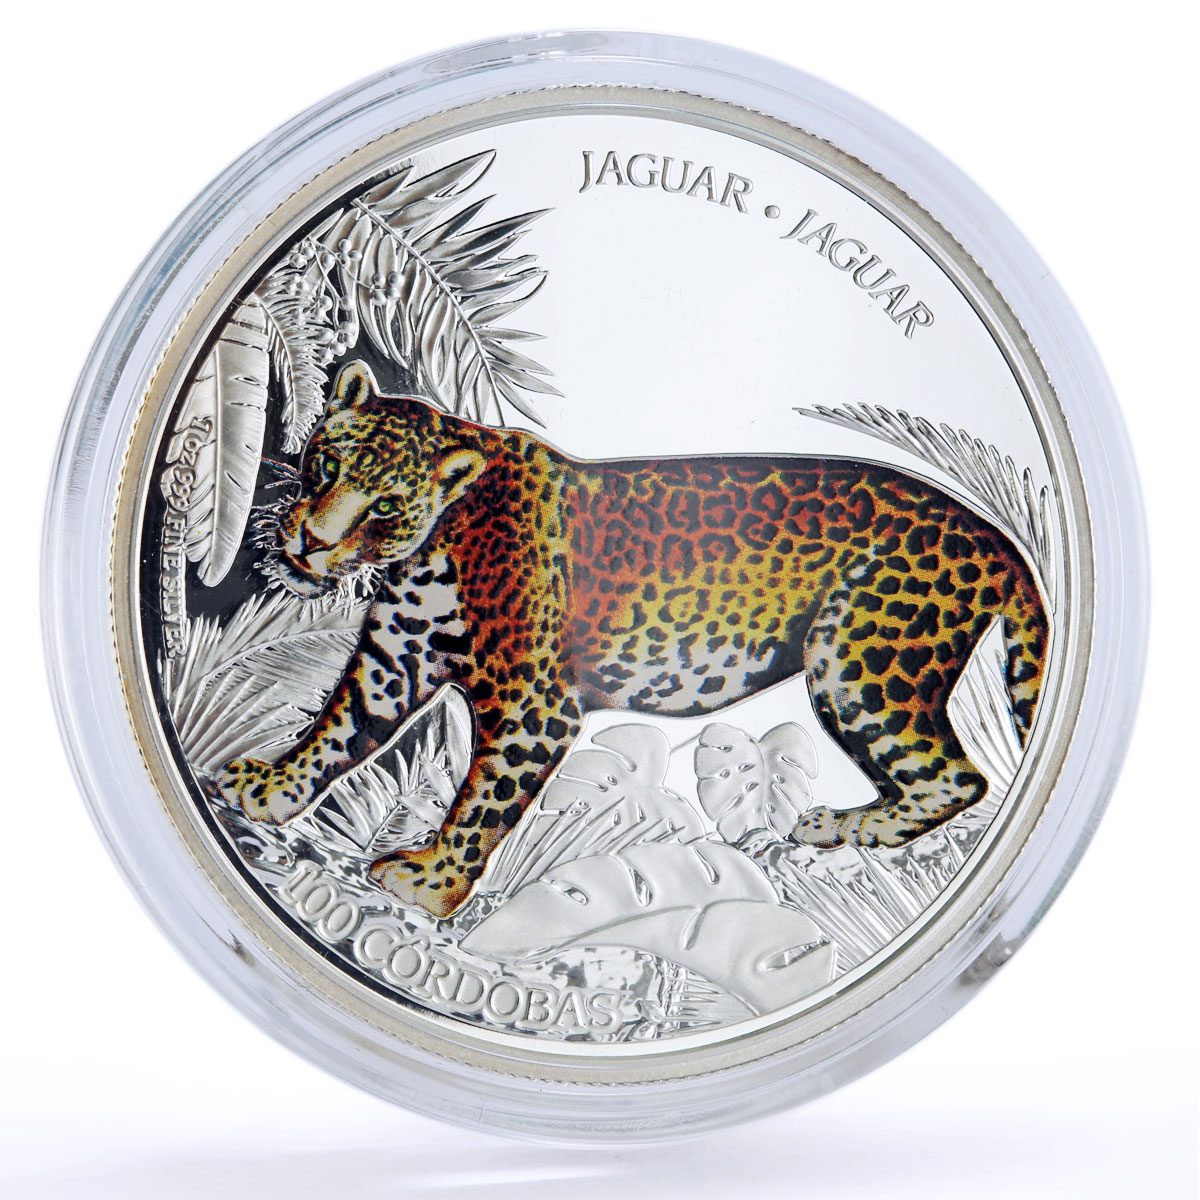 Nicaragua 100 cordobas Conservation Wildlife Jaguar Cat Fauna silver coin 2018